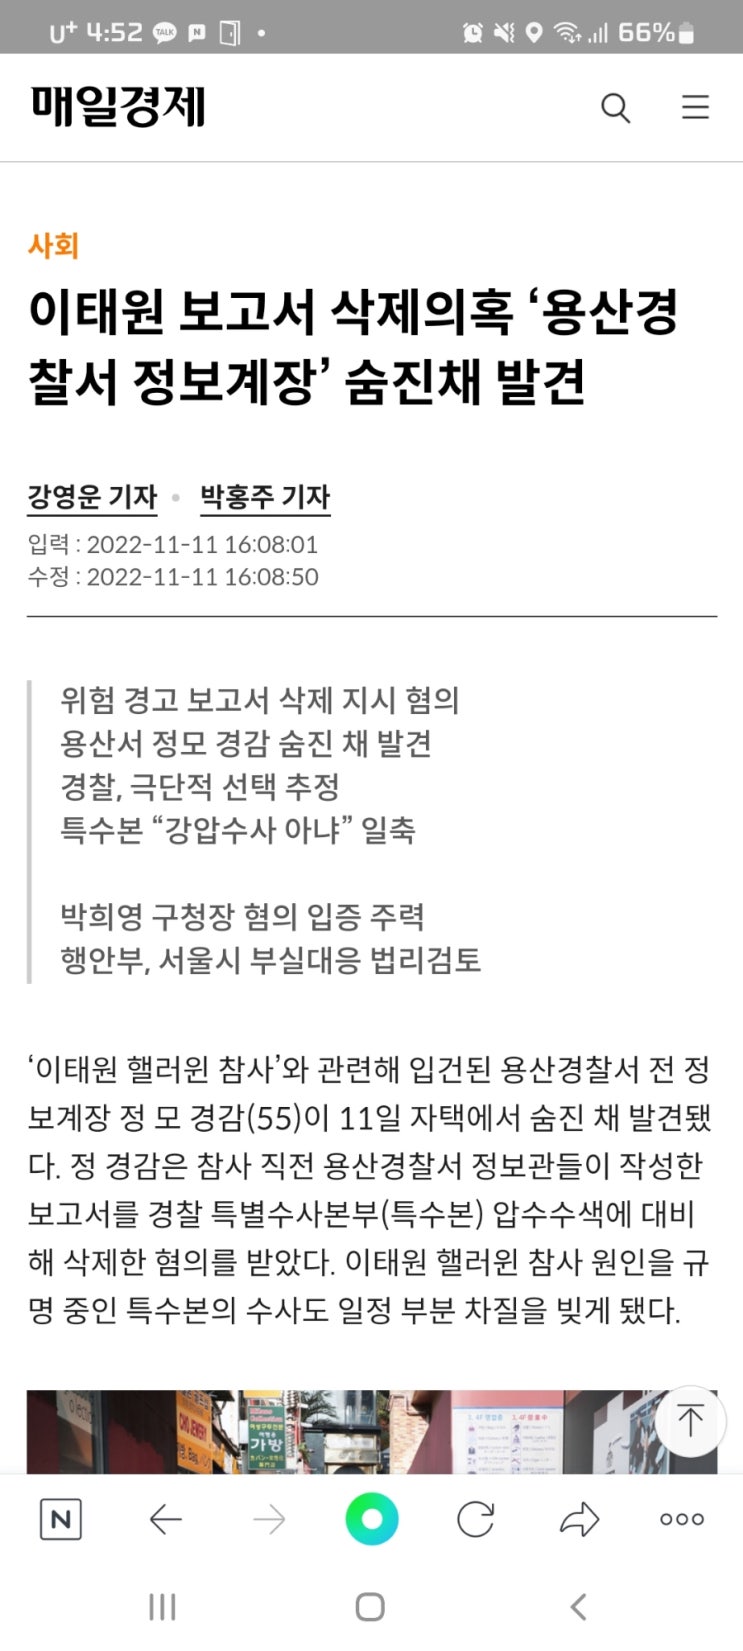 이태원 보고서 삭제의혹 ‘용산경찰서 정보계장’ 숨진채 발견